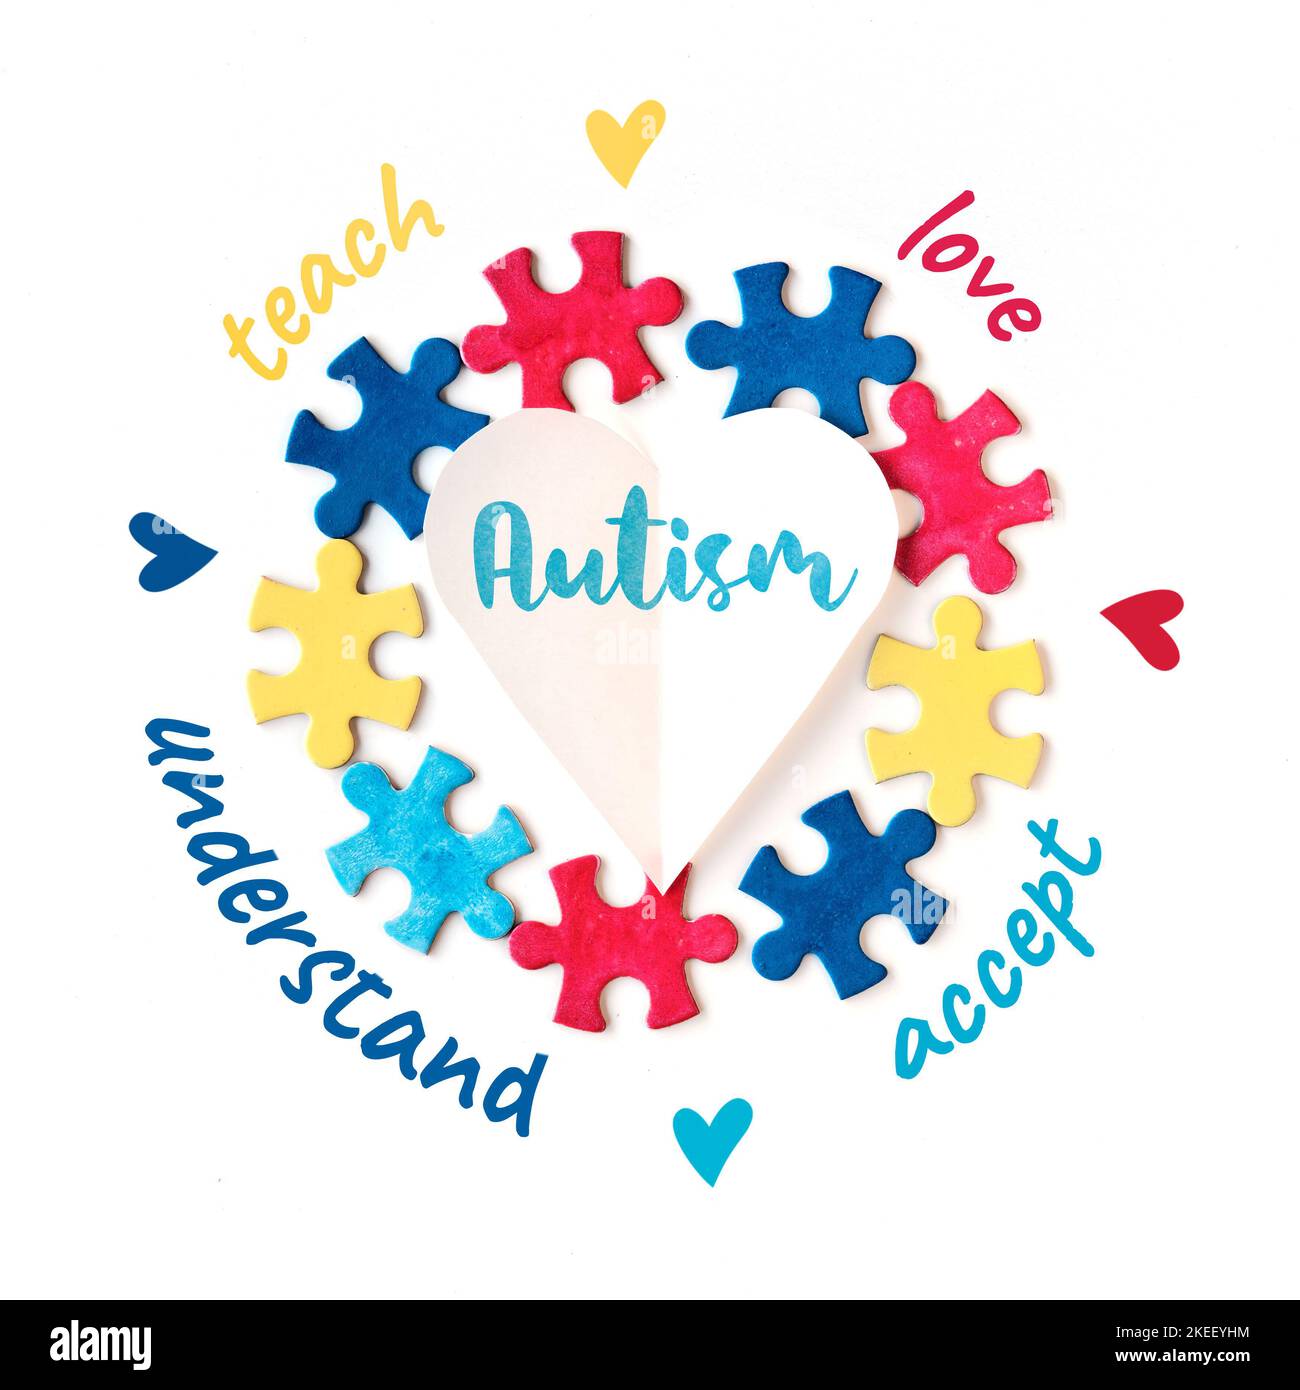 Welttag Des Autismus. Puzzle Stücke um Papier Herz mit Wort Autismus. Worte lieben, lehren, akzeptieren, verstehen. Kampagnendesign. Flach liegend Stockfoto